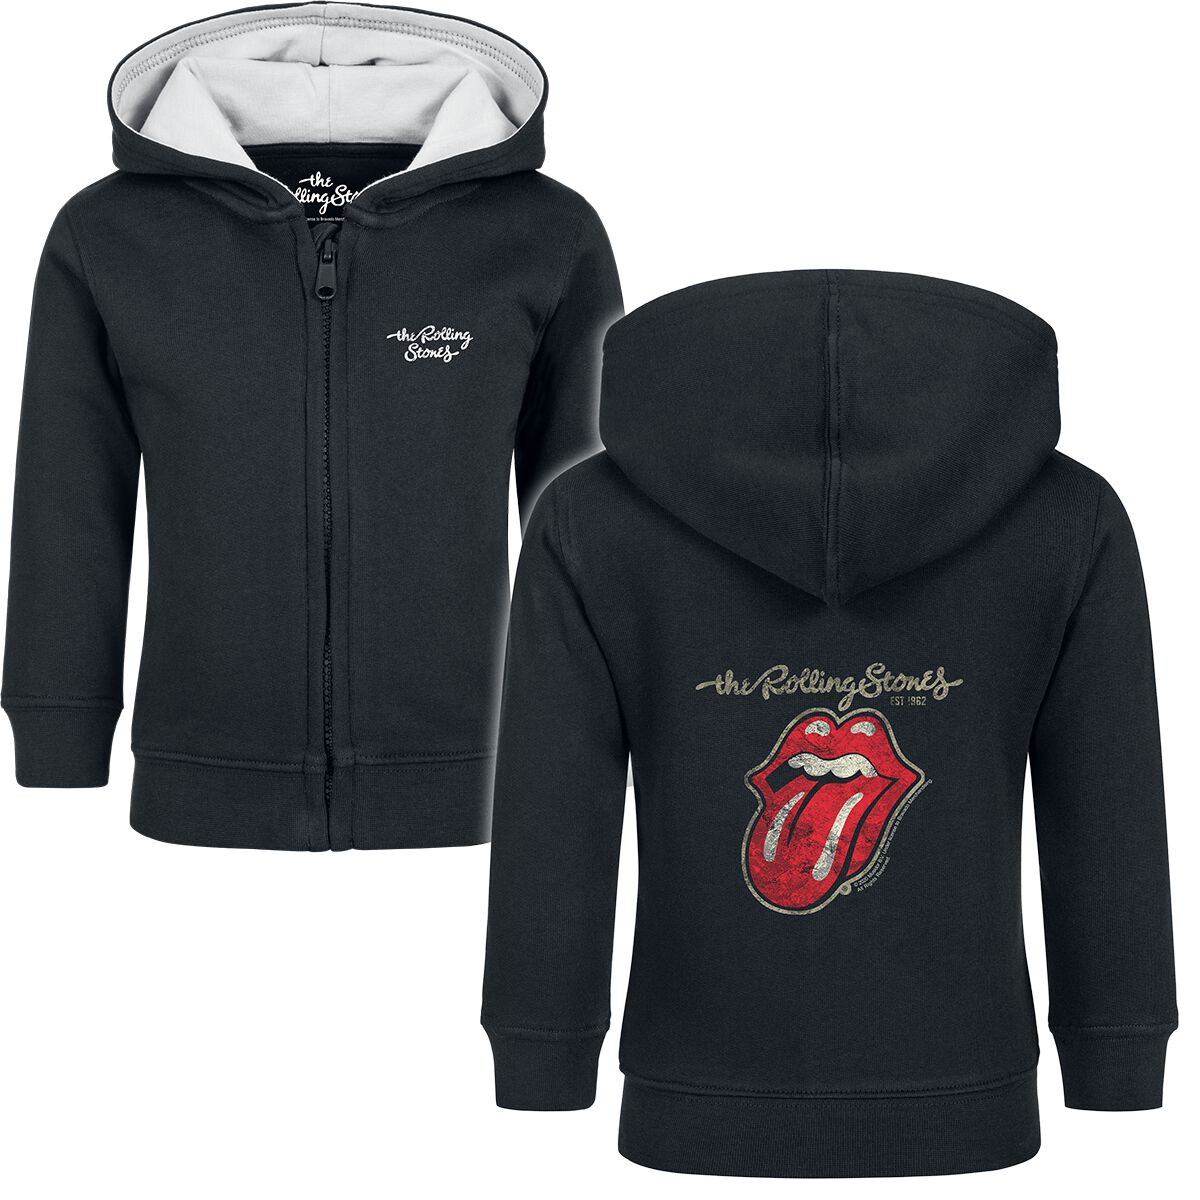 Vestes à capuches pour bébés de The Rolling Stones - Metal-Kids - Classic Tongue - 80/86 - pour fill